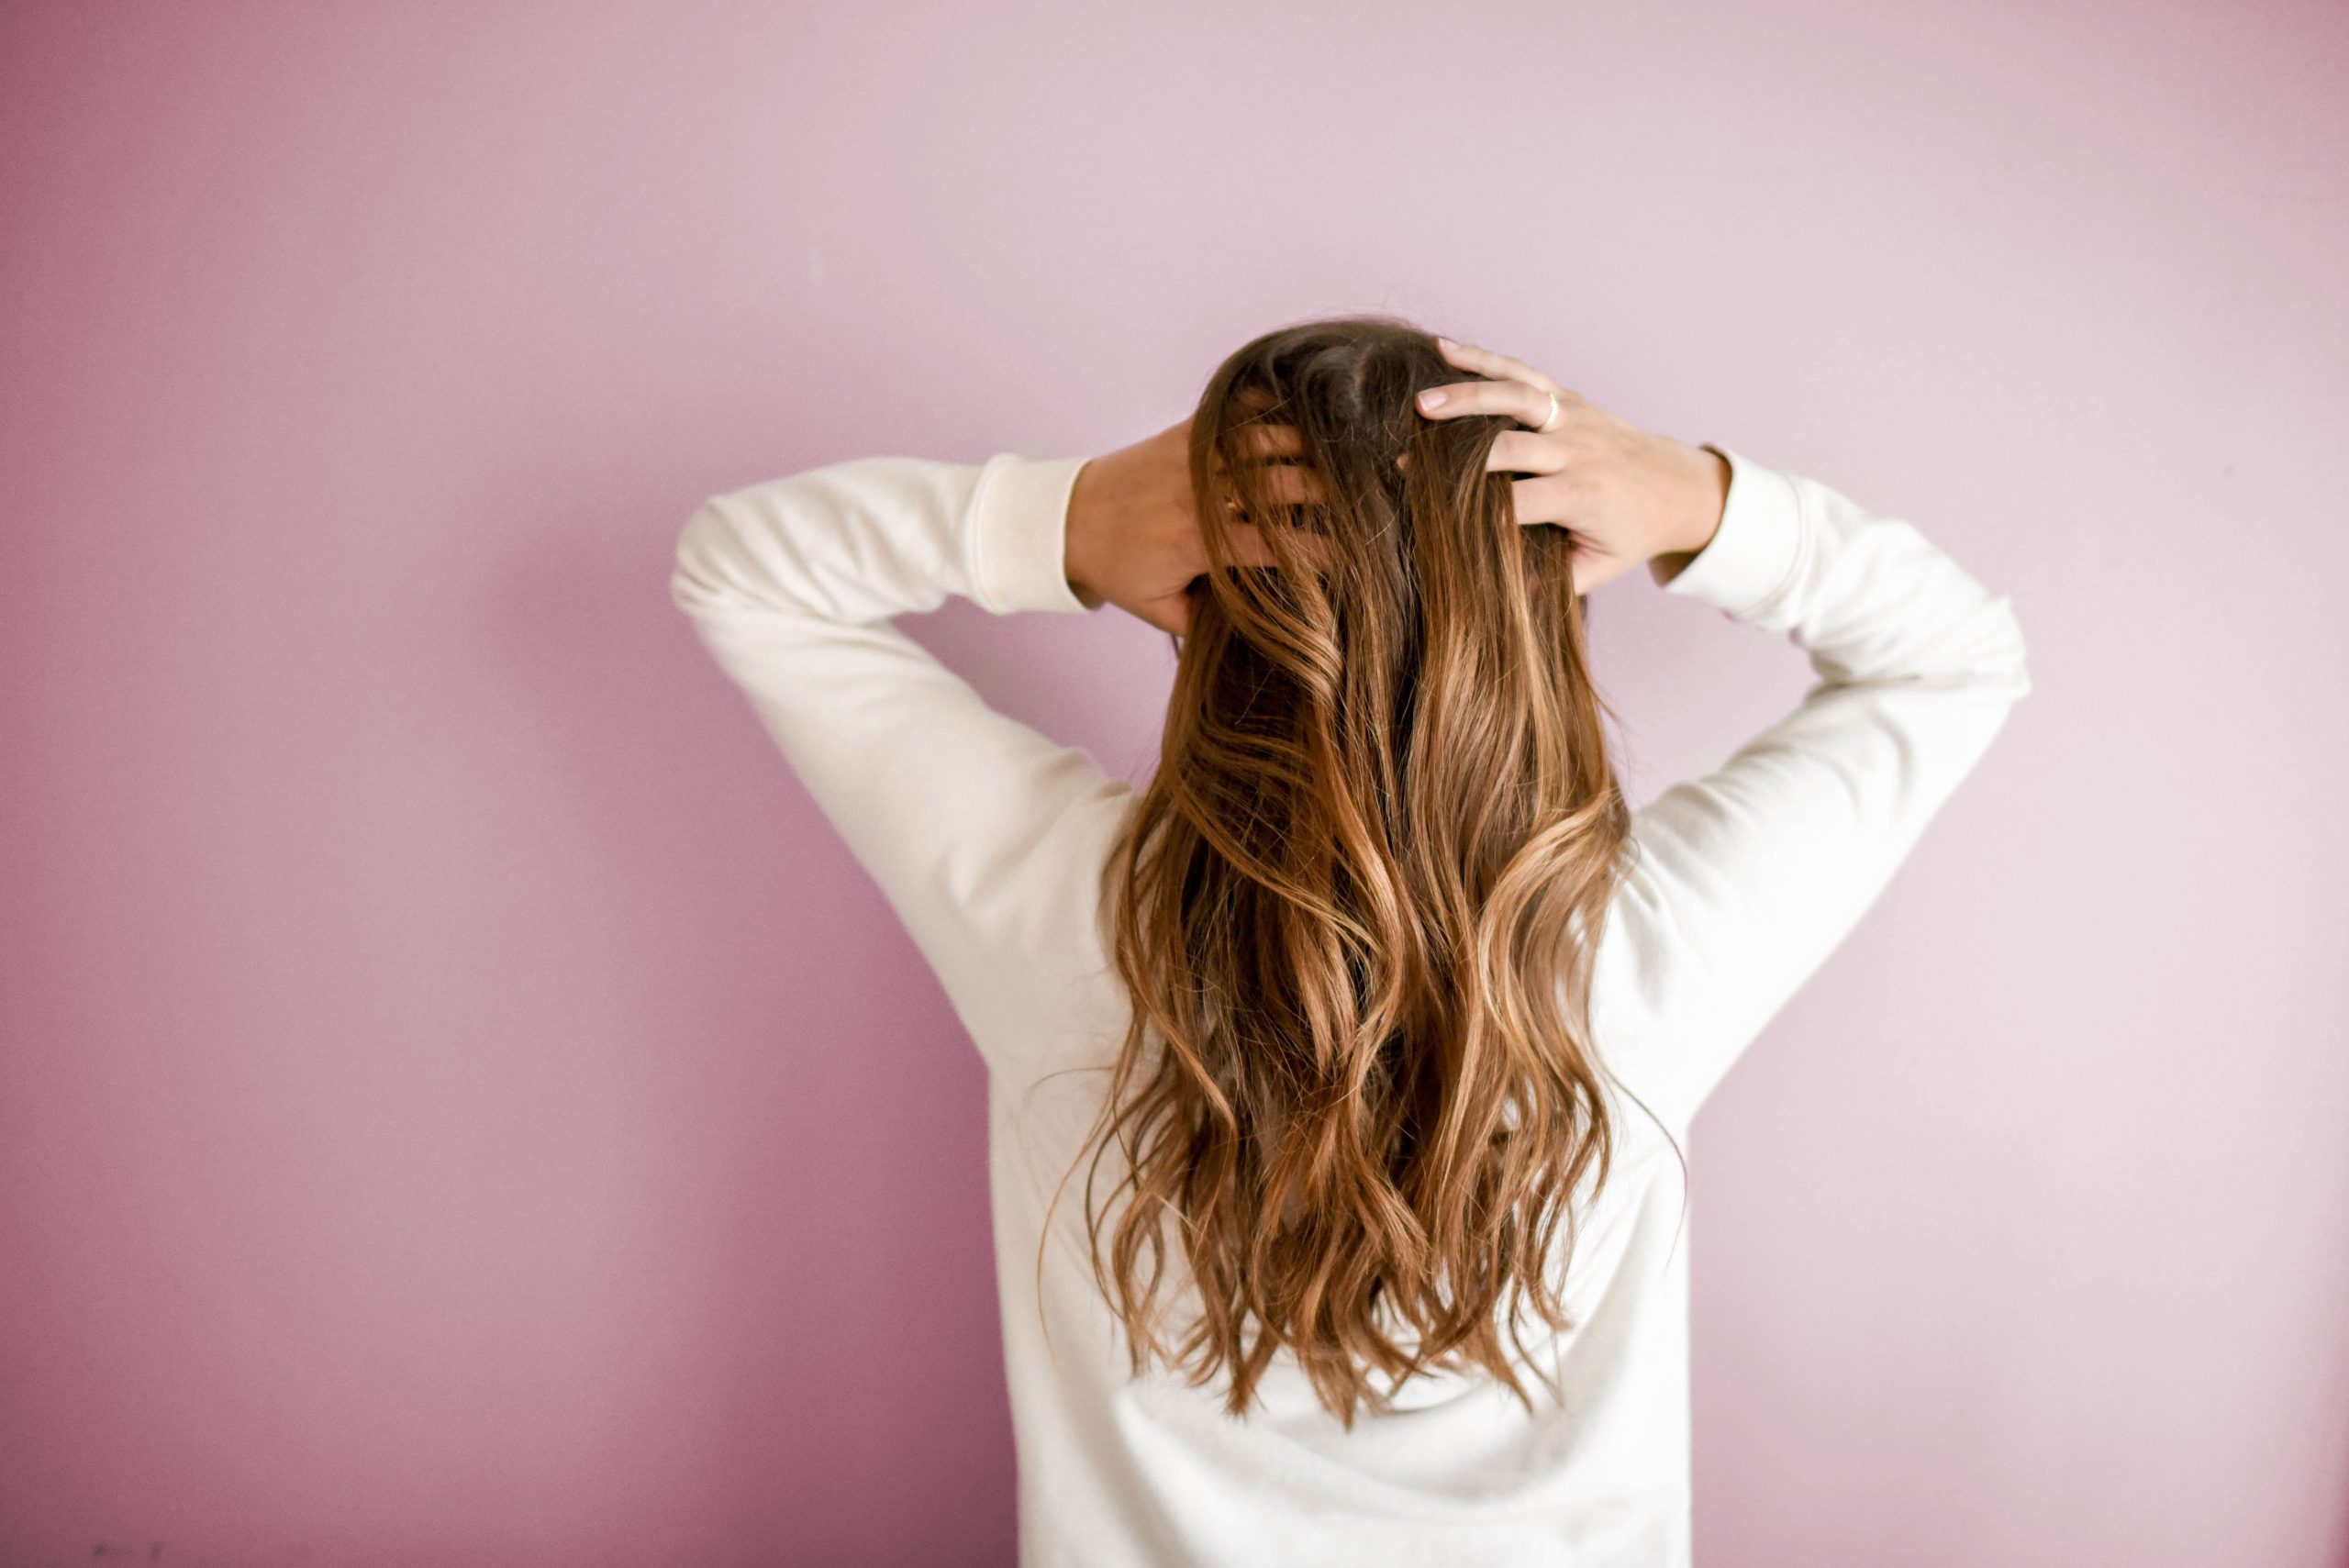  Симпатии для роста волос: руководство с 5 лучшими симпатиями для волос